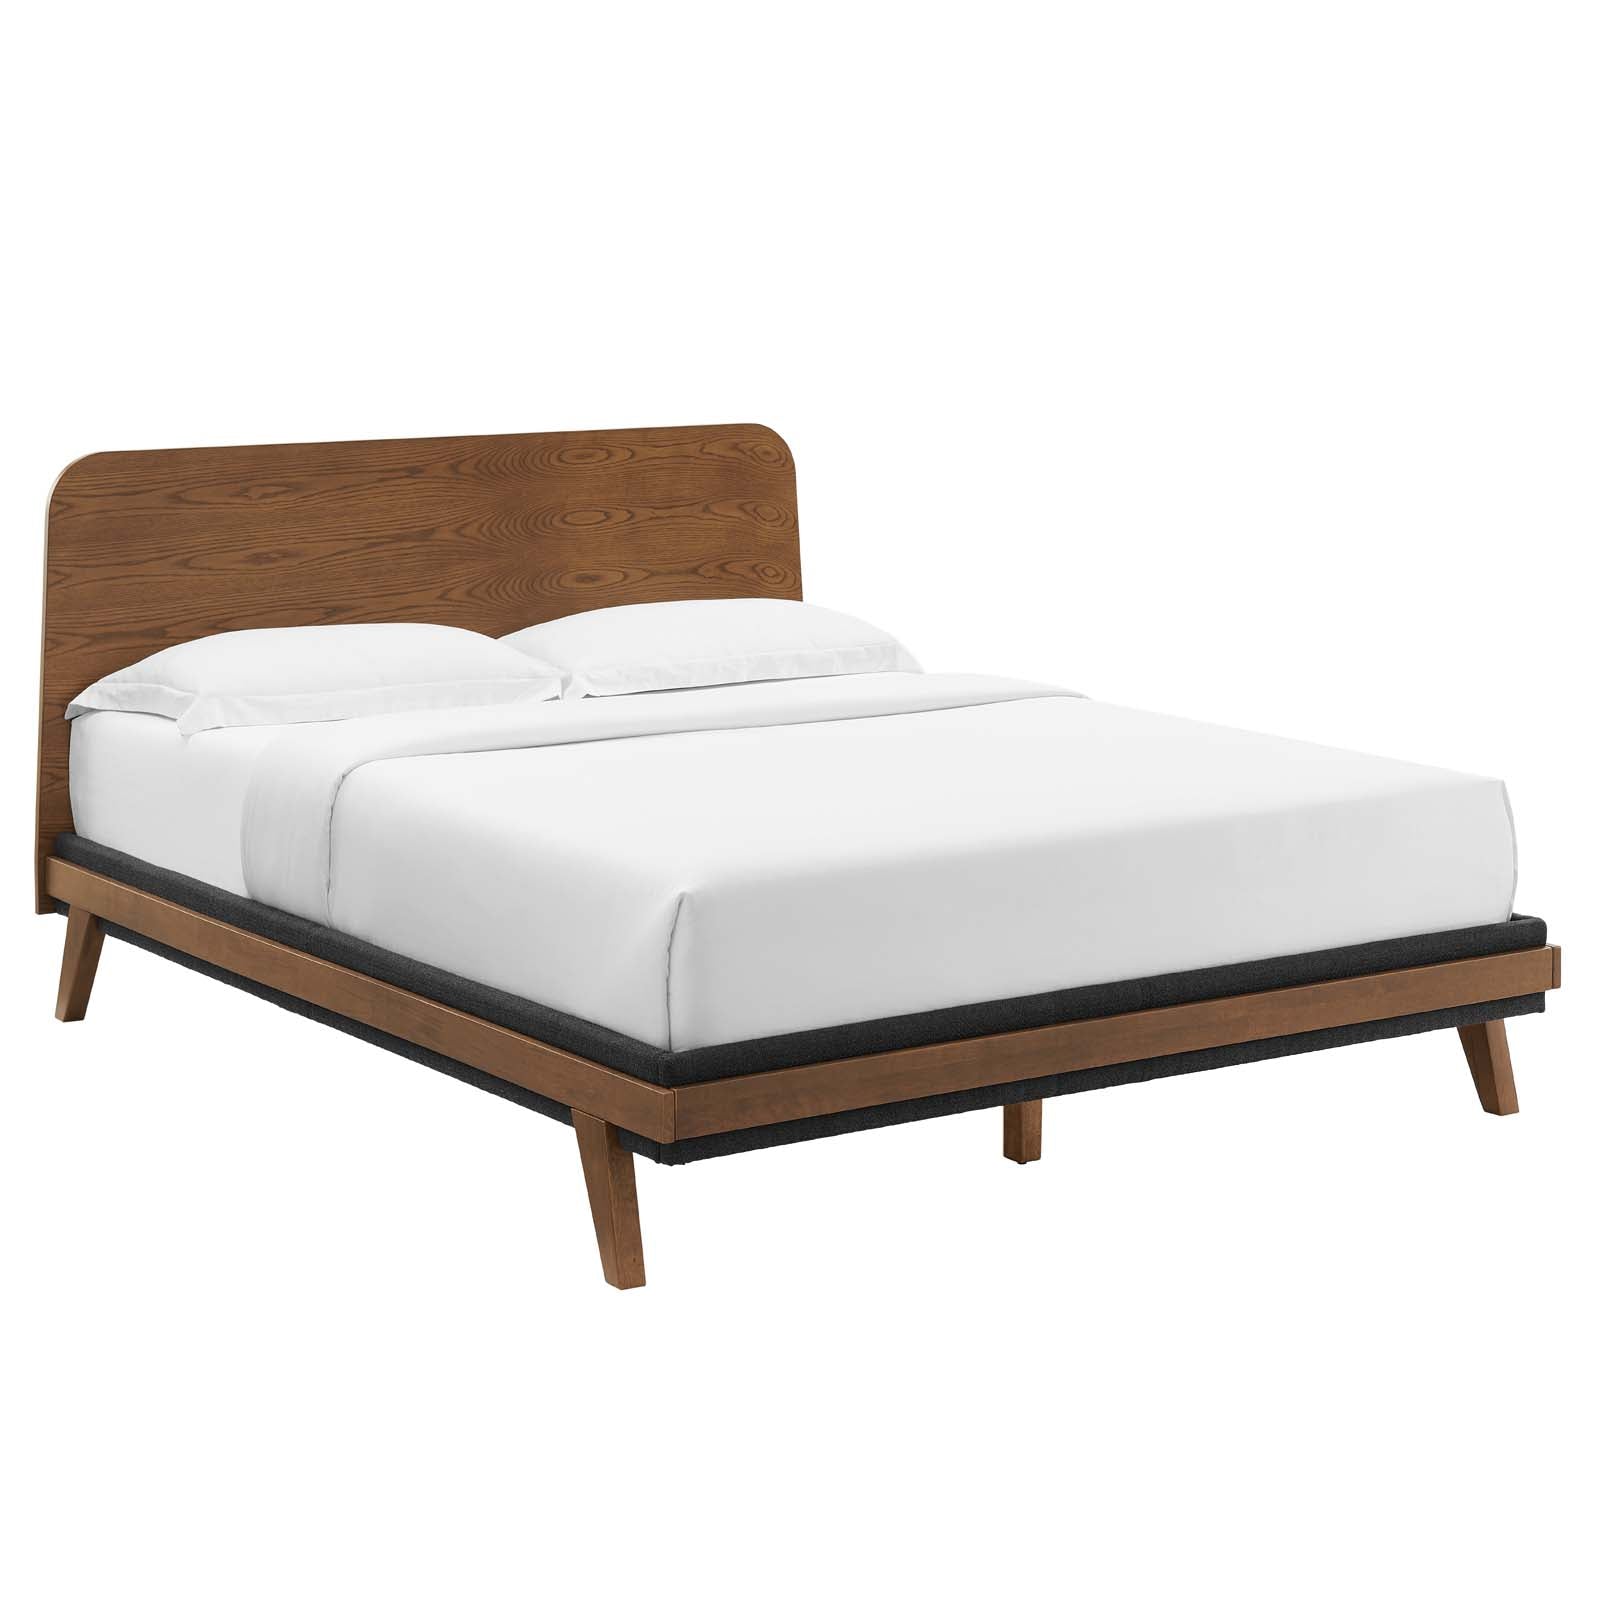 Modway Bedroom Sets - Dylan 3 Piece Bedroom Set Walnut